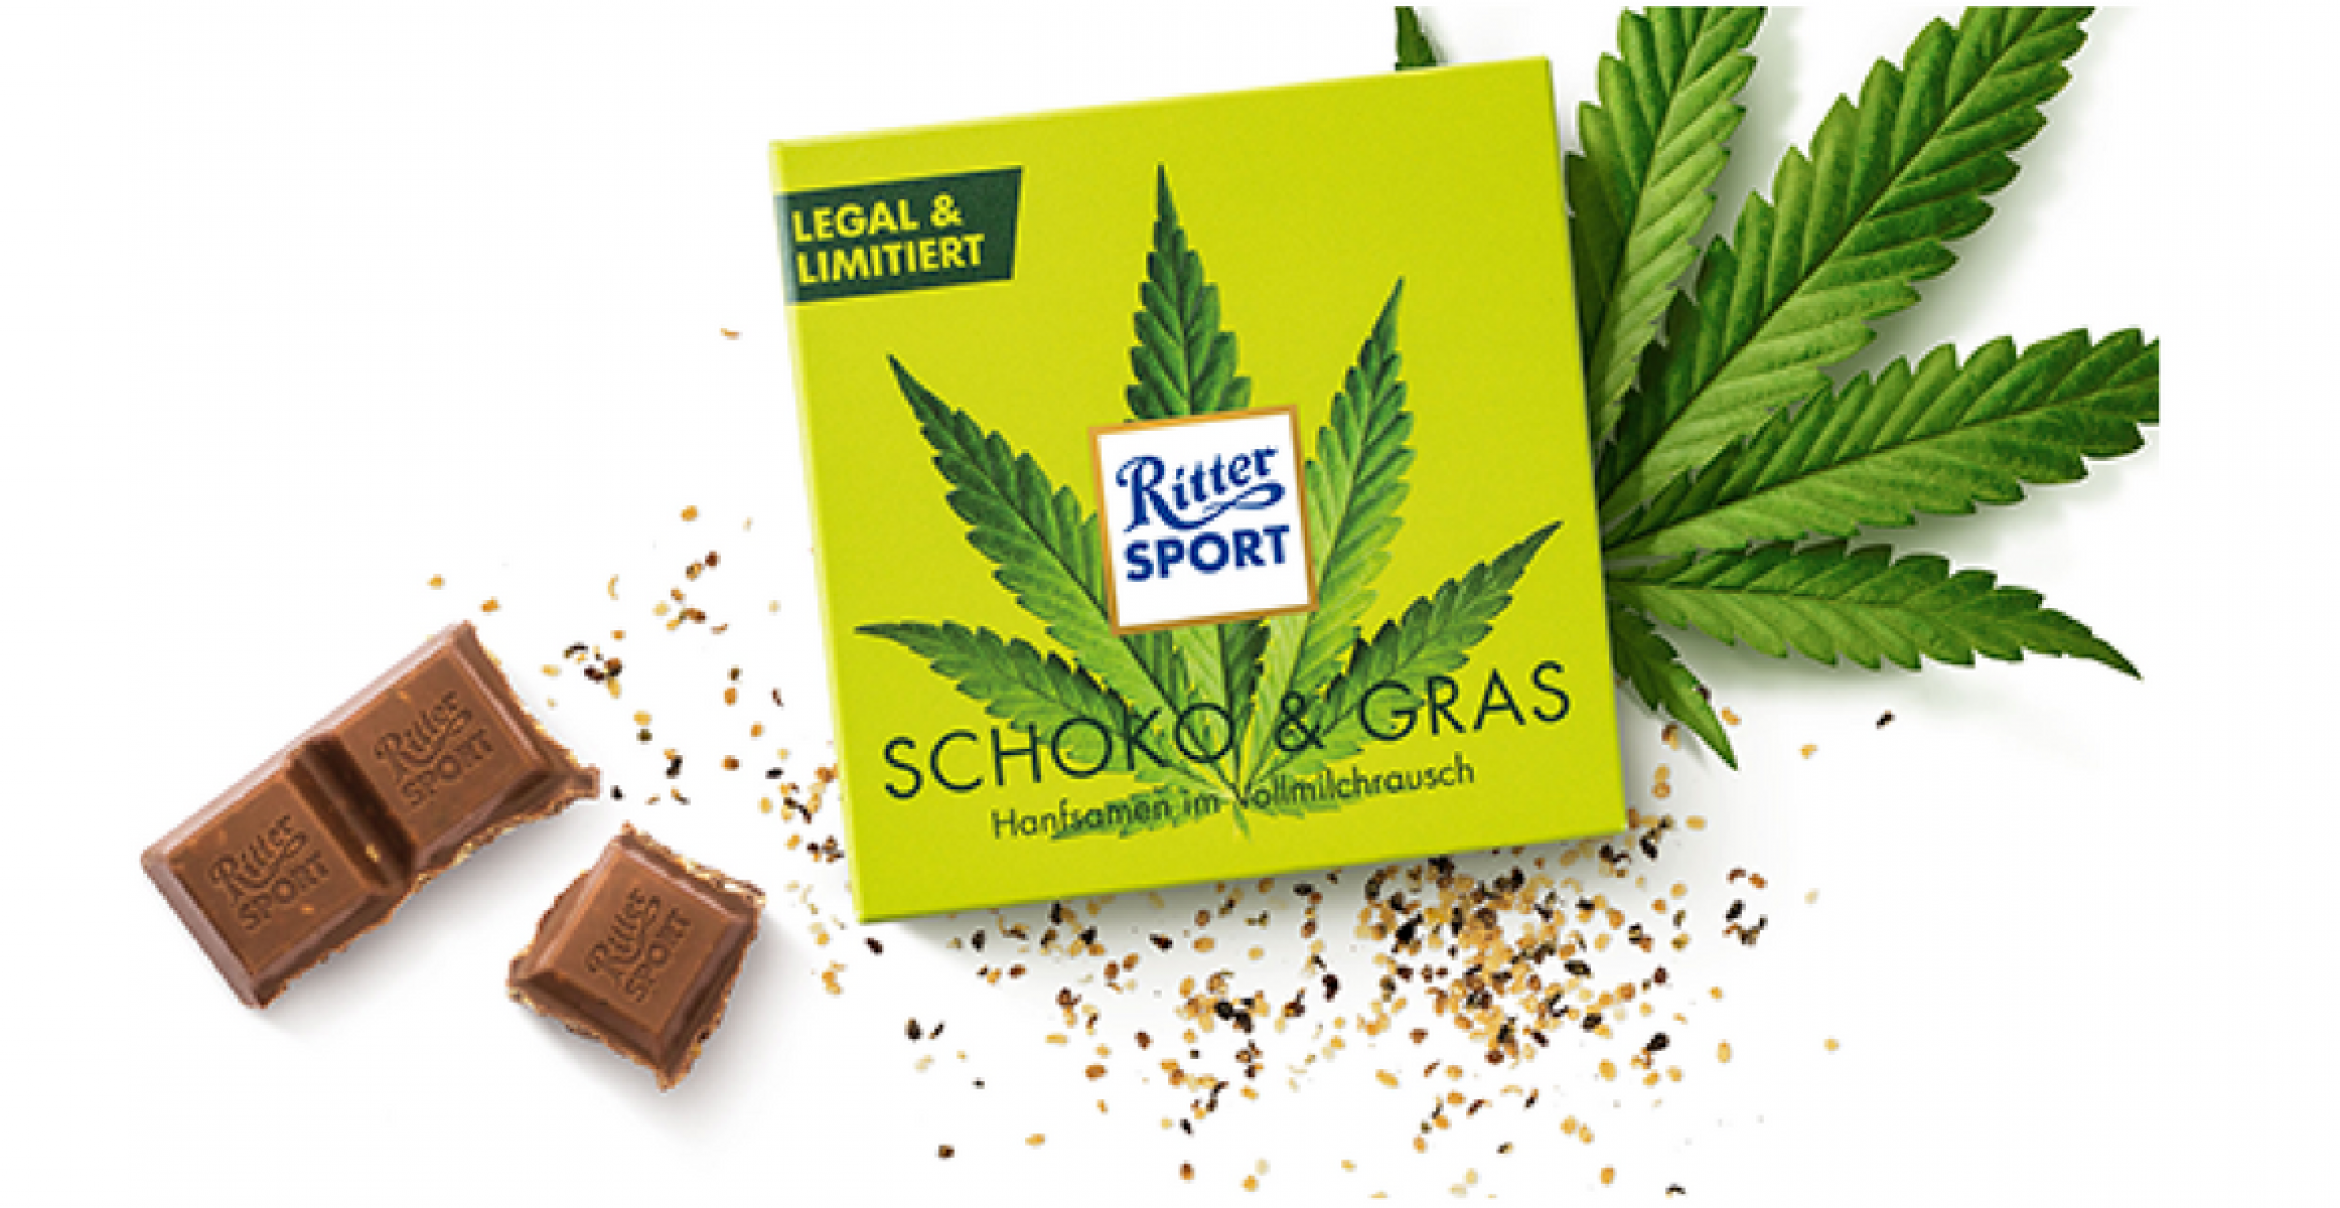 High vor Schokoglück: Hanf-Schokolade von Ritter Sport nach 48 Stunden ausverkauft